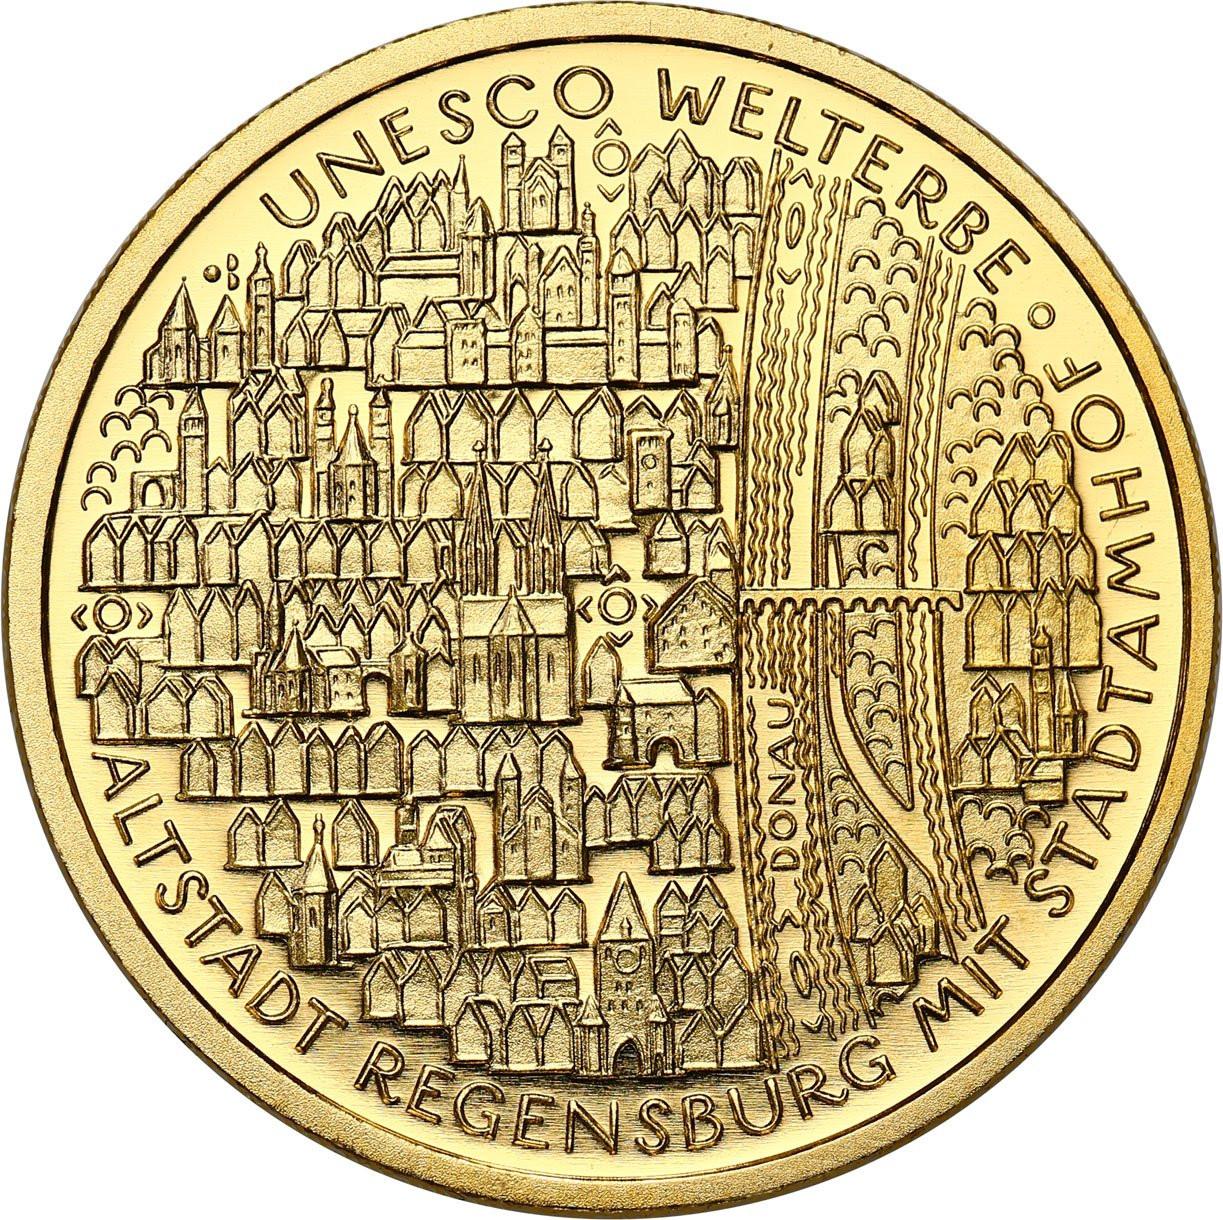 Niemcy. 100 euro 2017 UNESCO - Miasto Regensburg - 1/2 uncji złota